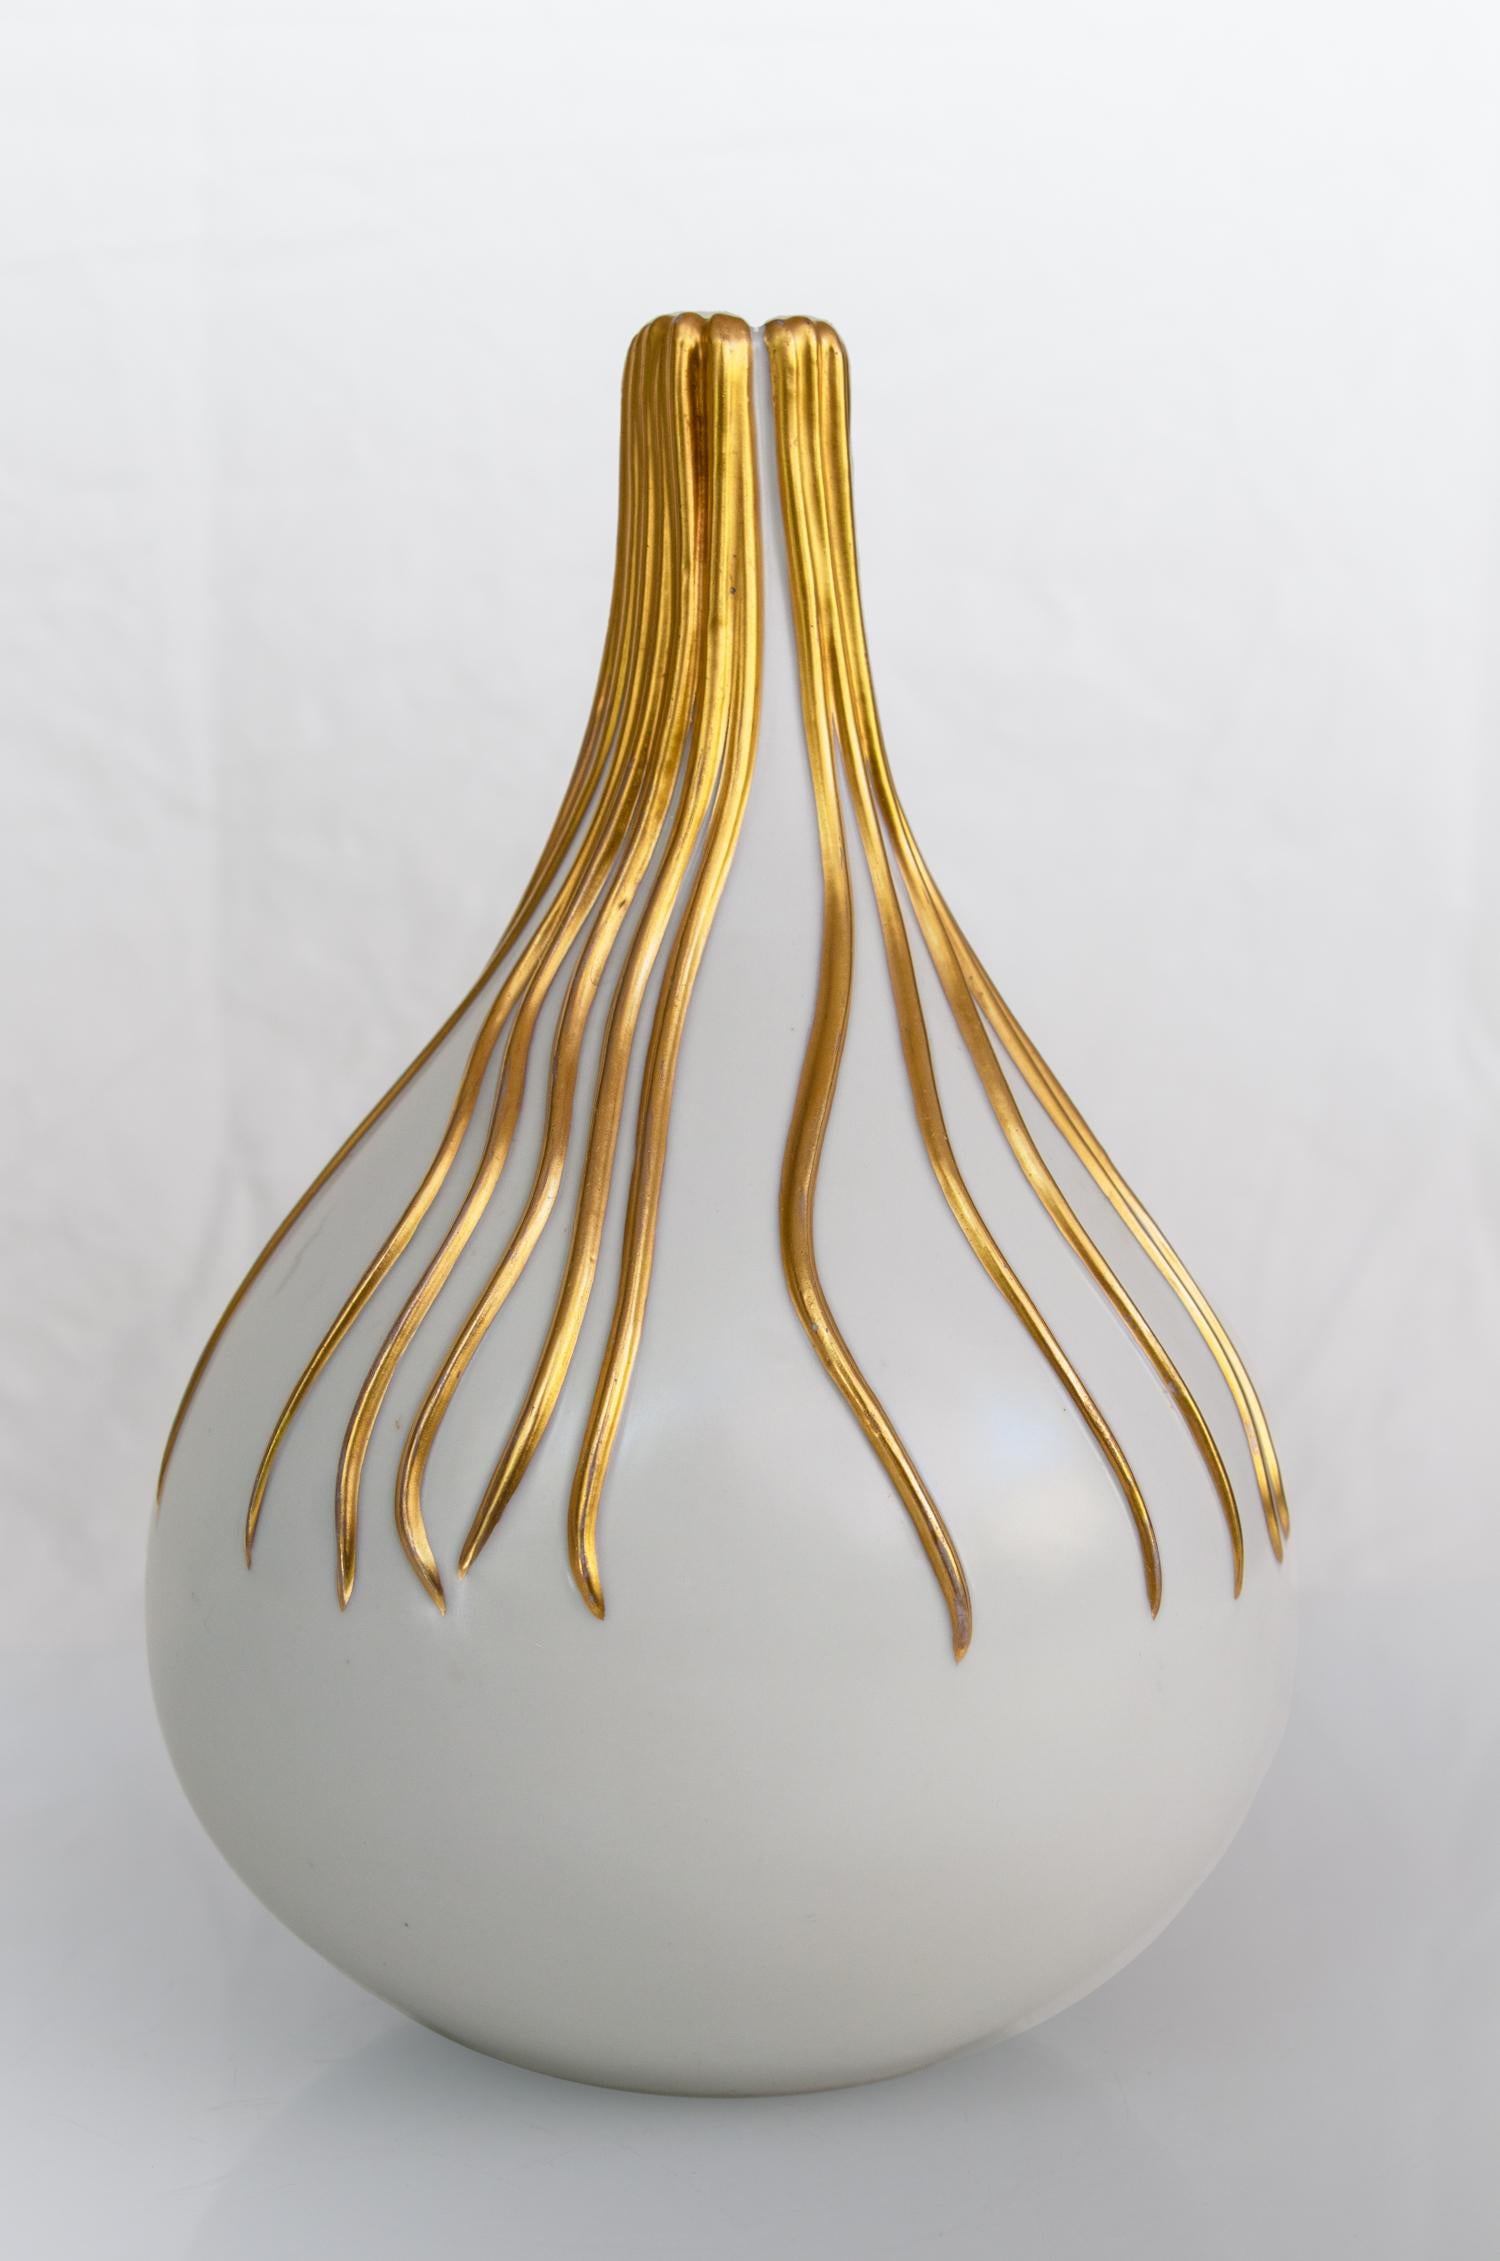 Vase en céramique conçu par Giovanni Gariboldi dans les années 1930 pour Richard Ginori, San Cristoforo, Italie.

Vase bulbeux en céramique blanche avec une petite ouverture et une dorure.
Richard - Ginori, l'une des manufactures de porcelaine